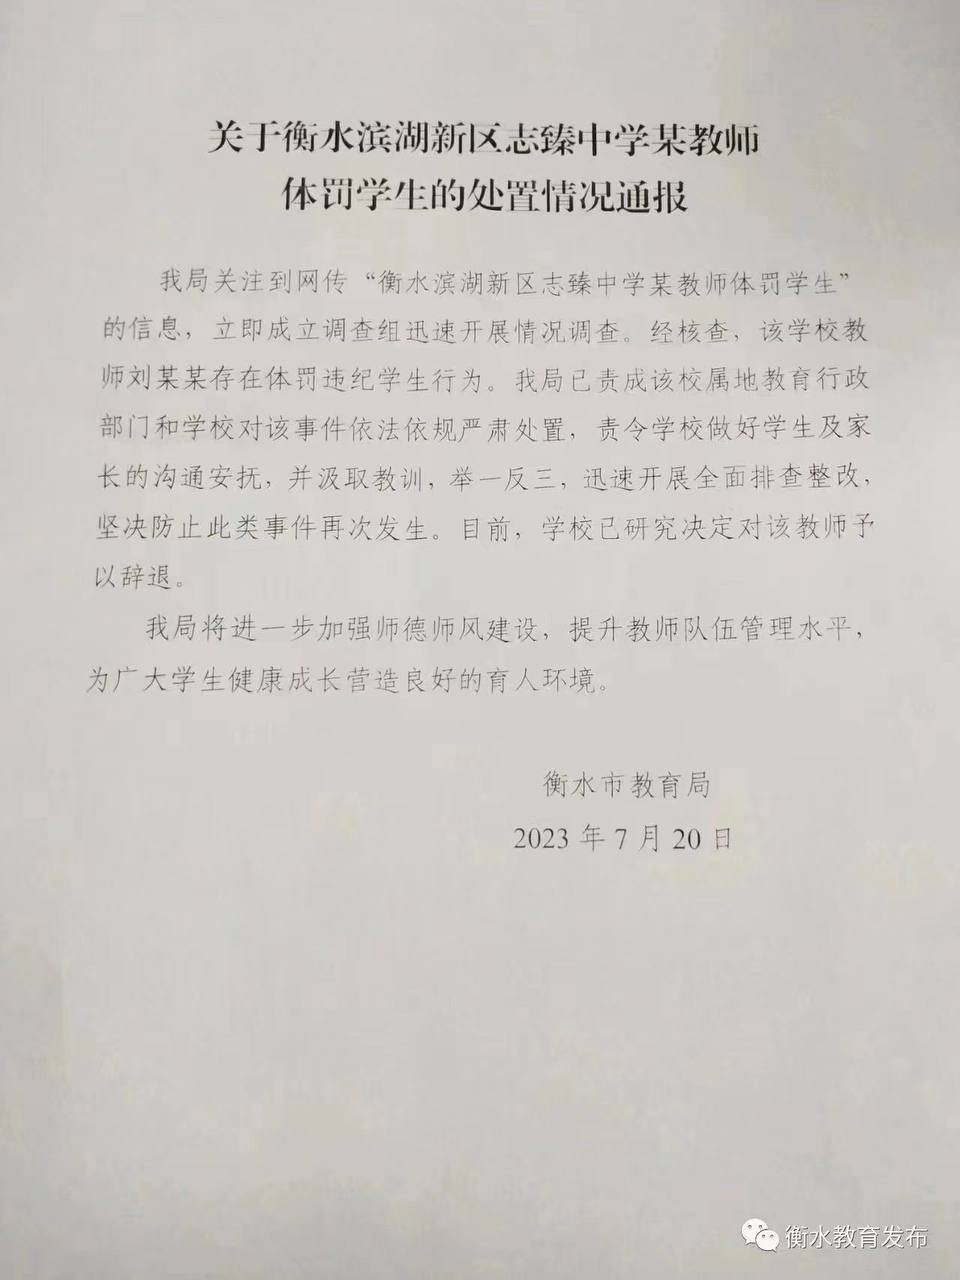  7月19日，网传 一段河北衡水滨湖新区志臻中学 #老师 体罚 #学生 的 #监控 视频。